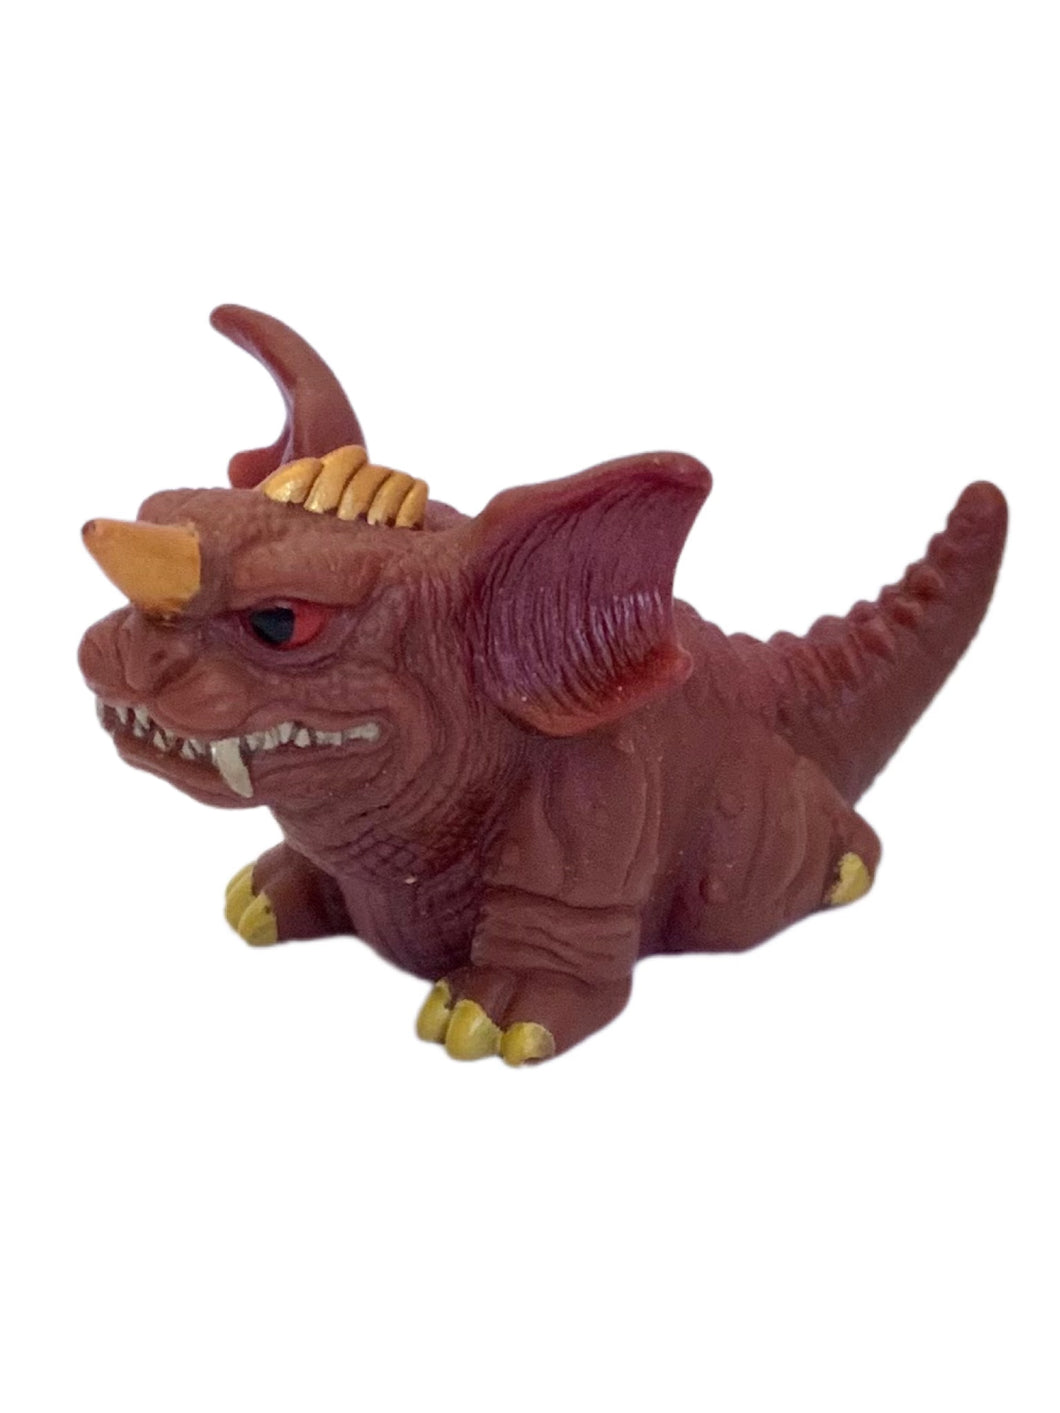 Gojira - Baragon 2001 - Godzilla All-Out Attack - Trading Figure - No. 8